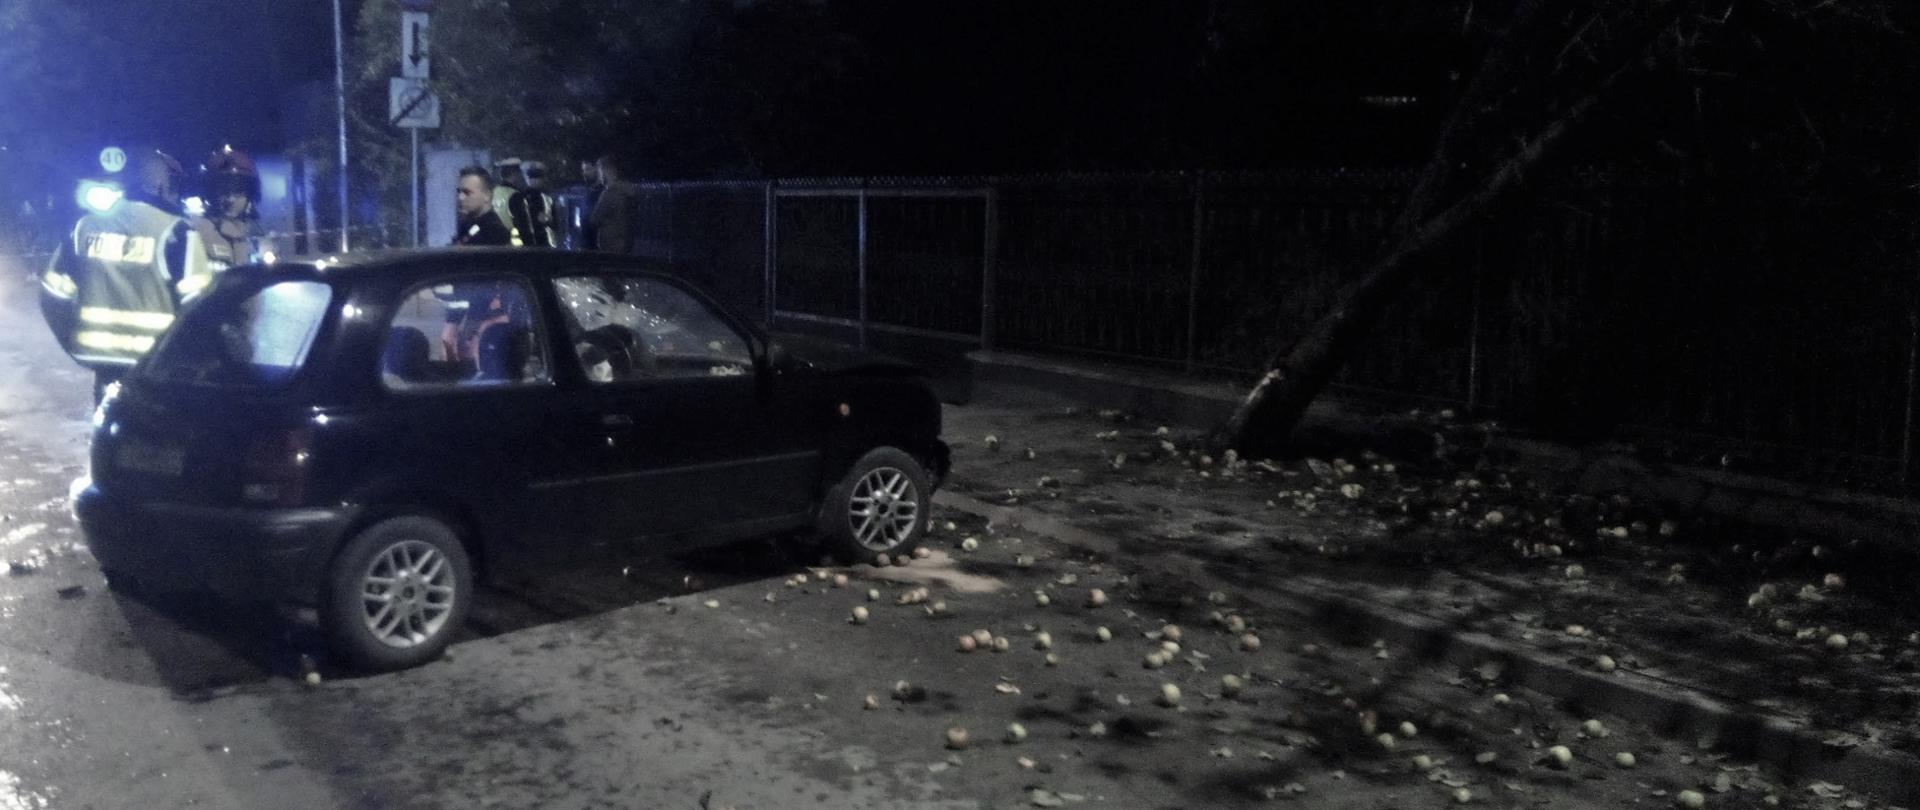 Zdjęcie przedstawia samochód Nissan Micra, który uderzył w drzewo. Wokół rozsypane jabłka, które spadły z drzewa w wyniku uderzenia, a za samochodem widzimy przedstawicieli służb ratunkowych.